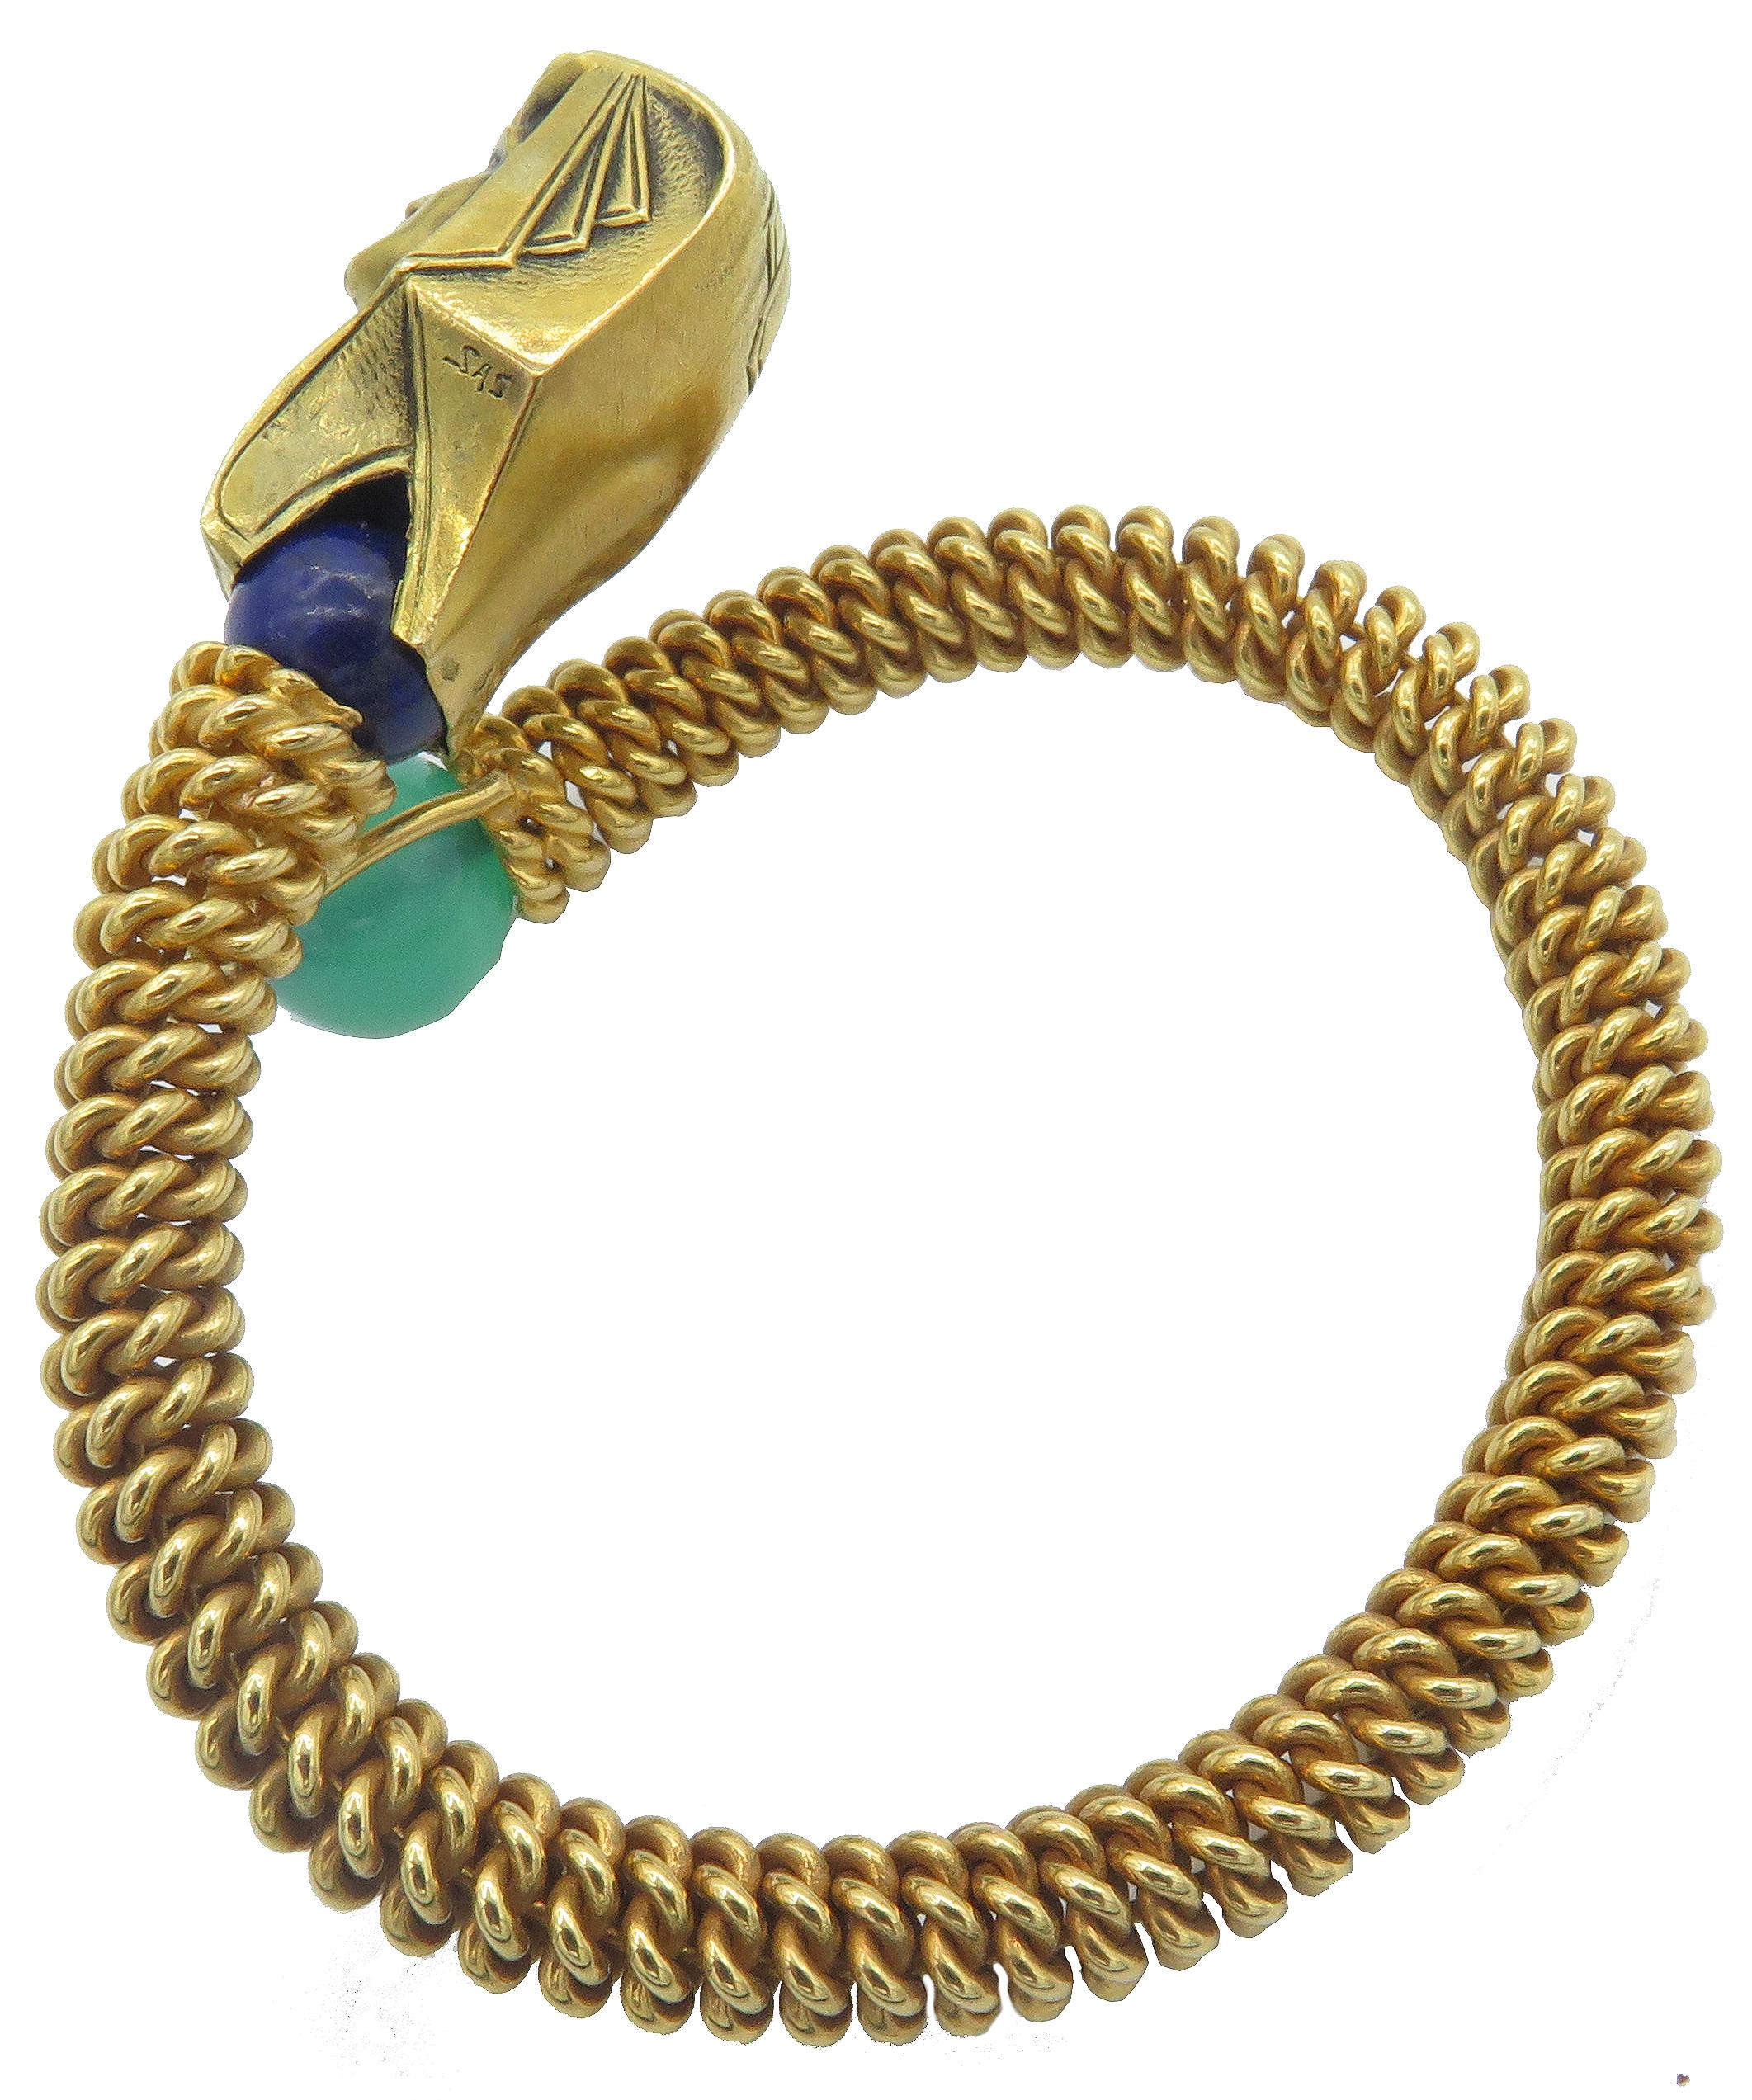 Les Égyptiens étaient des chefs de file dans la fabrication de bijoux comme ce beau et audacieux bracelet égyptien en or jaune 18 carats, symbole des pharaons de l'Égypte ancienne. La tête du pharaon est montée sur une pierre de lapis semi-précieuse